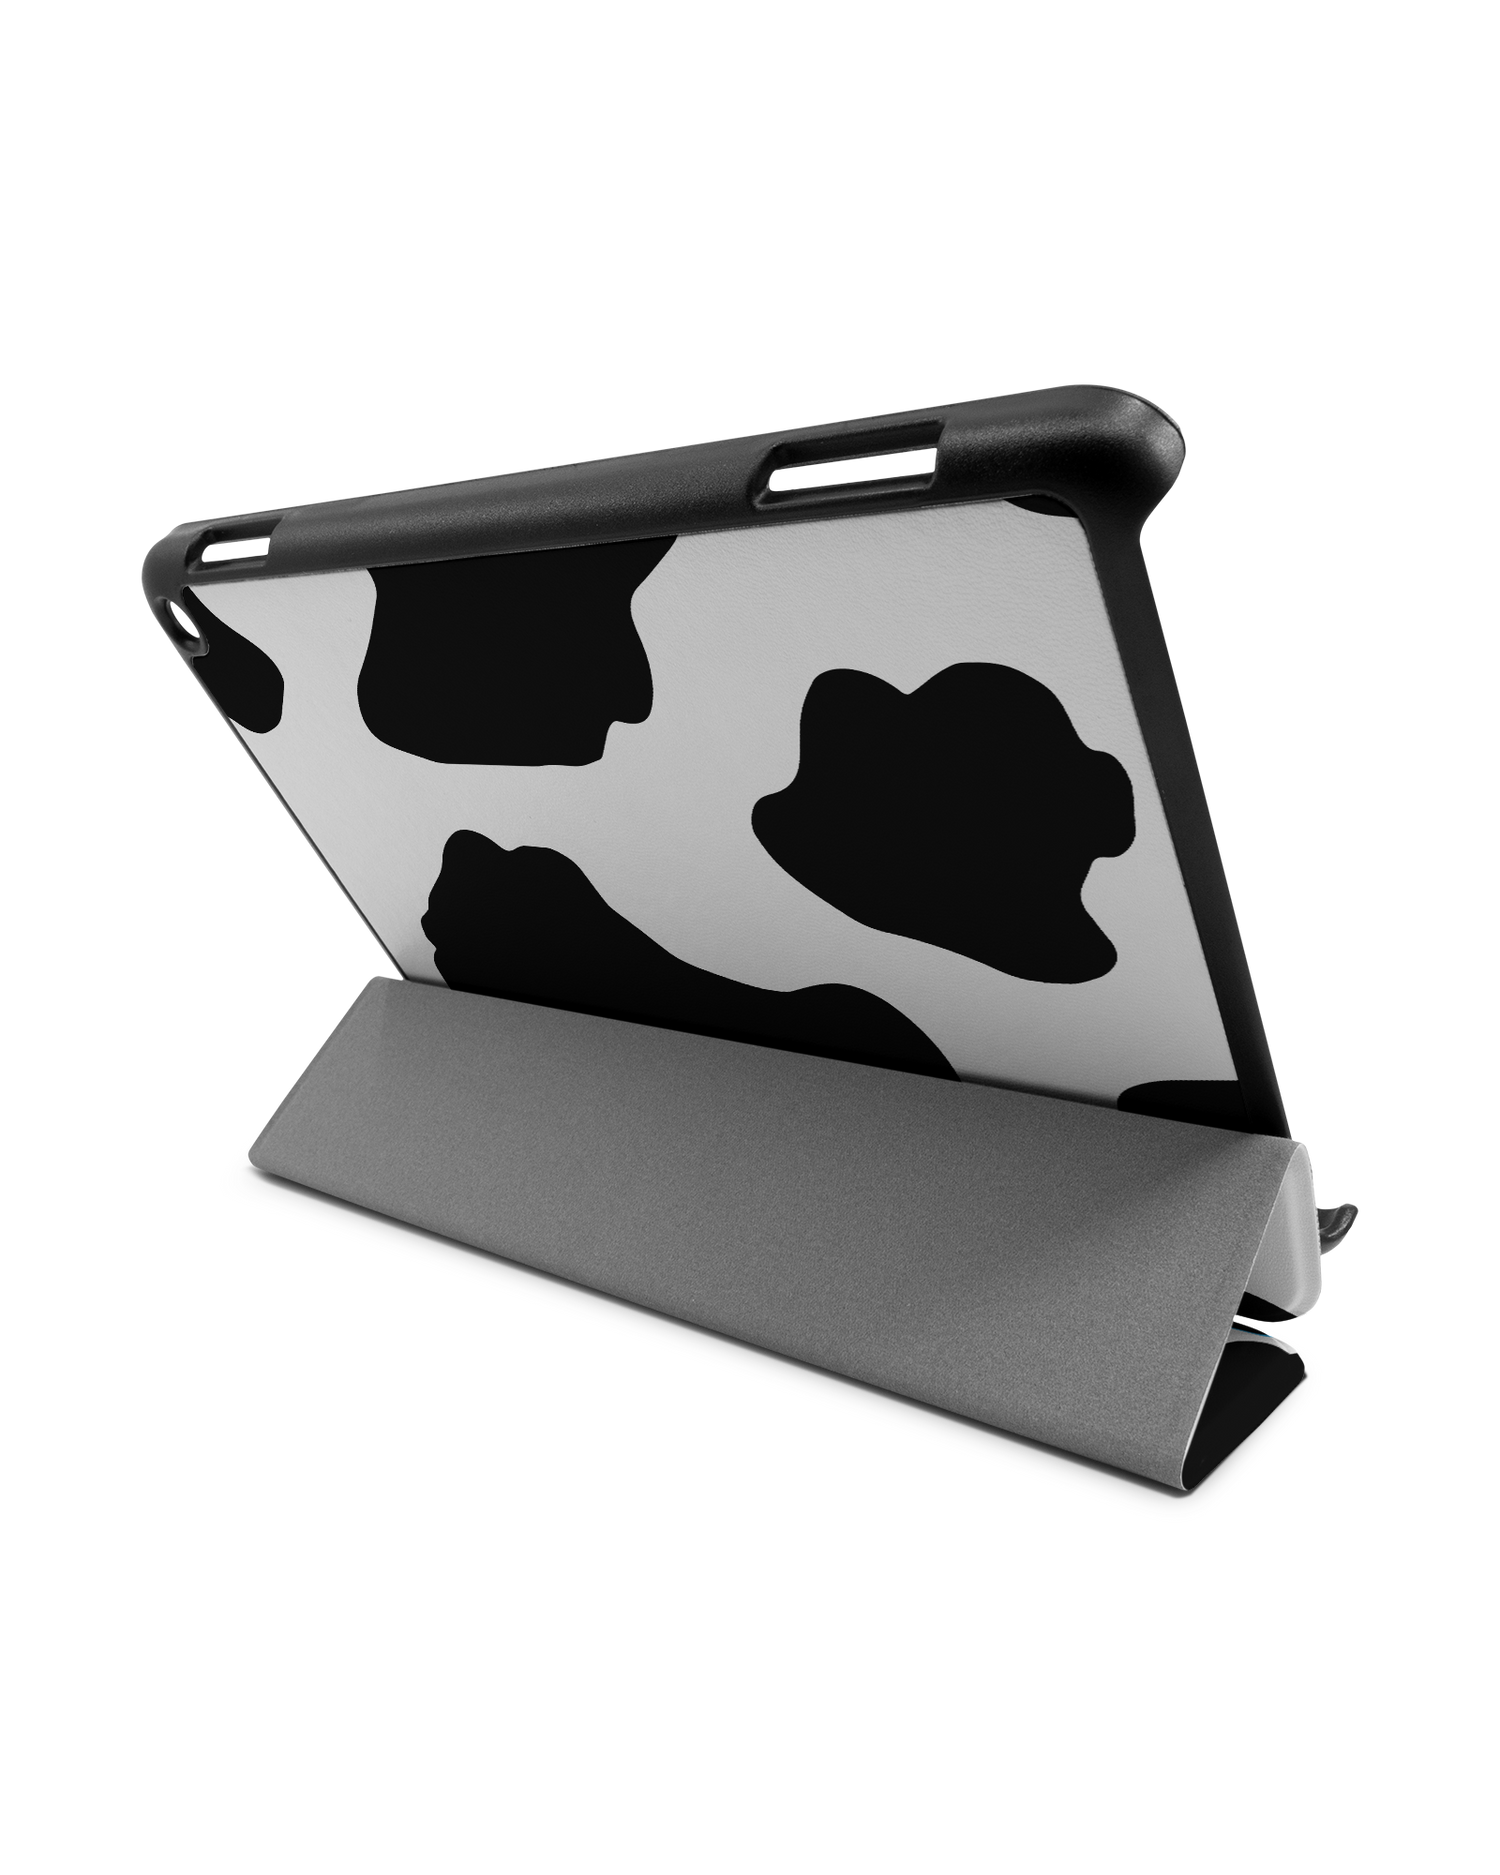 Cow Print 2 Tablet Smart Case für Amazon Fire HD 8 (2022), Amazon Fire HD 8 Plus (2022), Amazon Fire HD 8 (2020), Amazon Fire HD 8 Plus (2020): Aufgestellt im Querformat